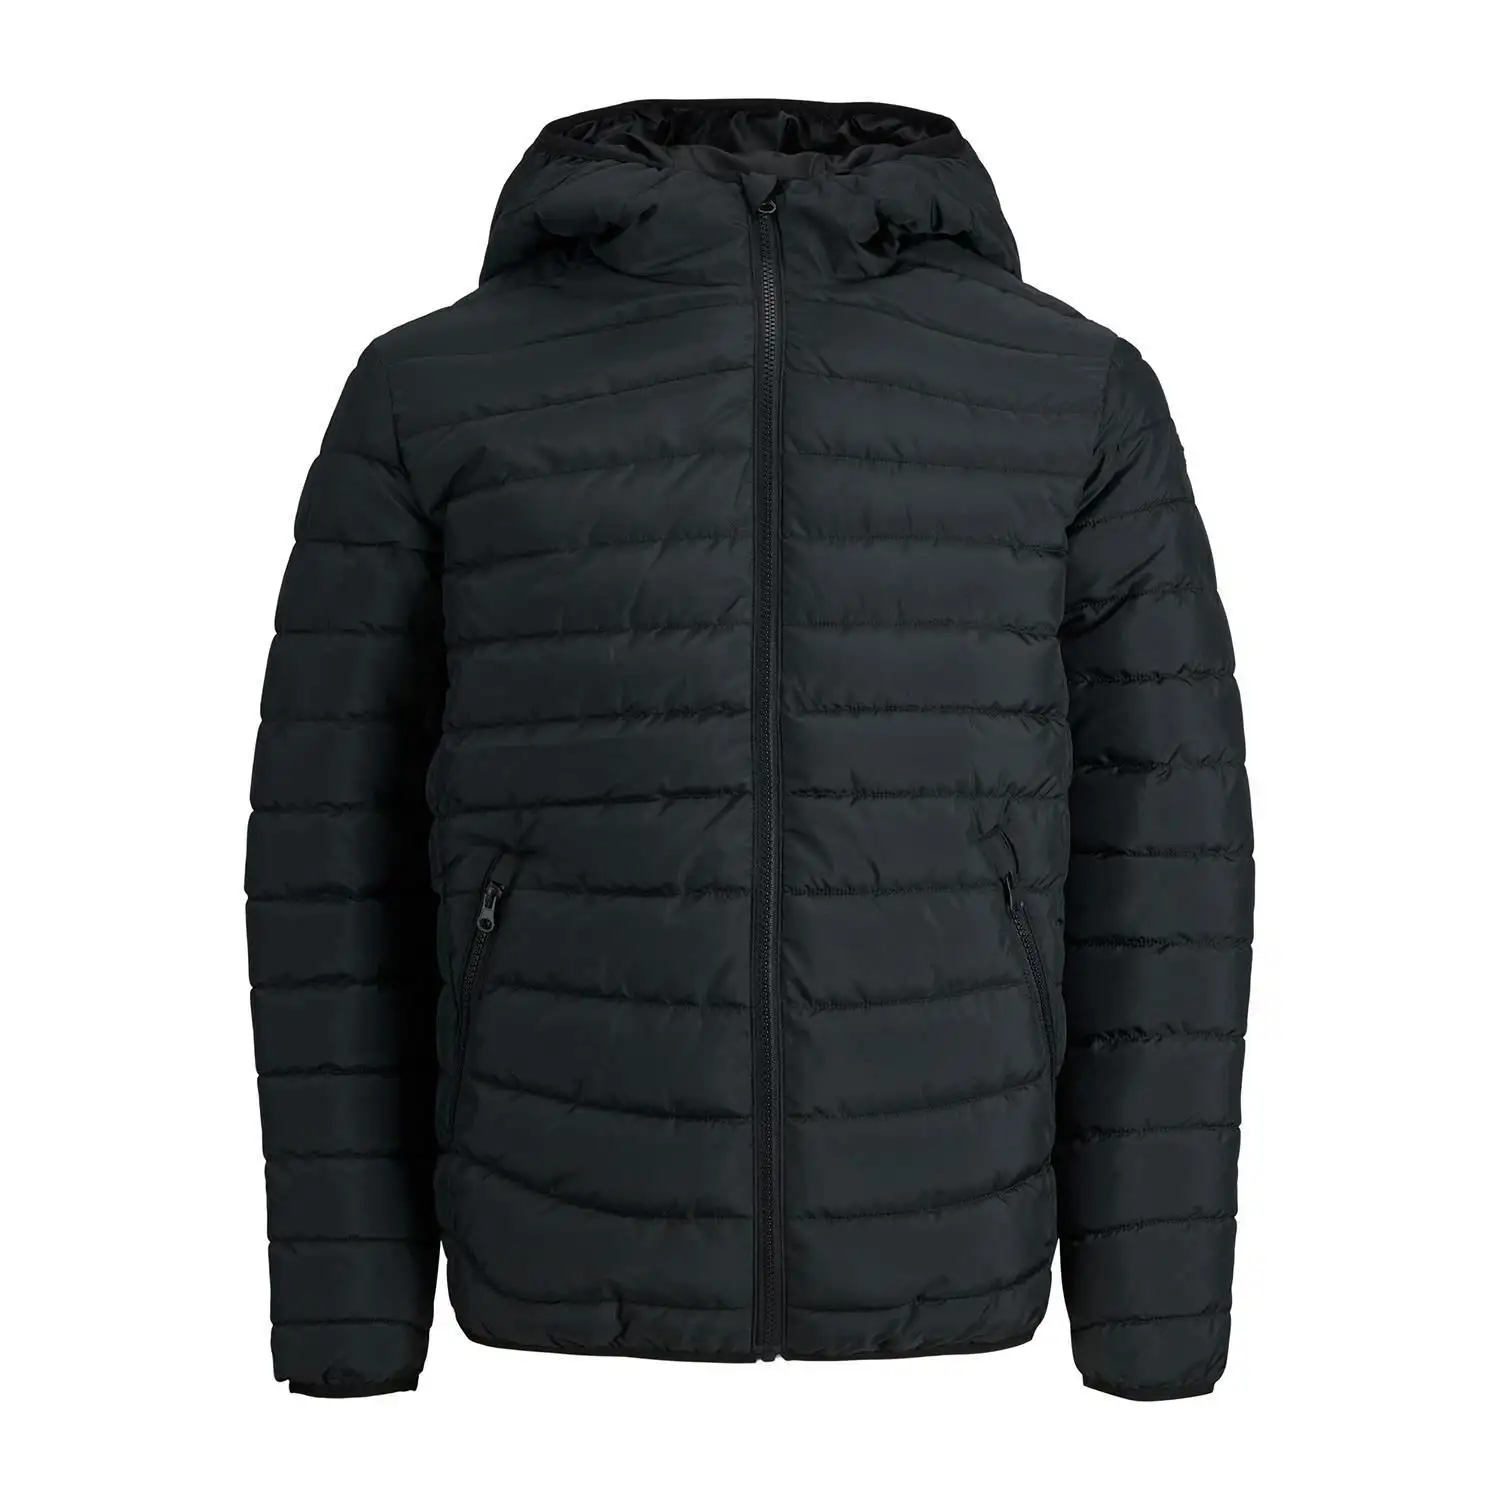 Jaqueta de inverno de alta qualidade para homens, jaqueta de manga comprida com logotipo personalizado impresso, jaqueta sopradora por atacado